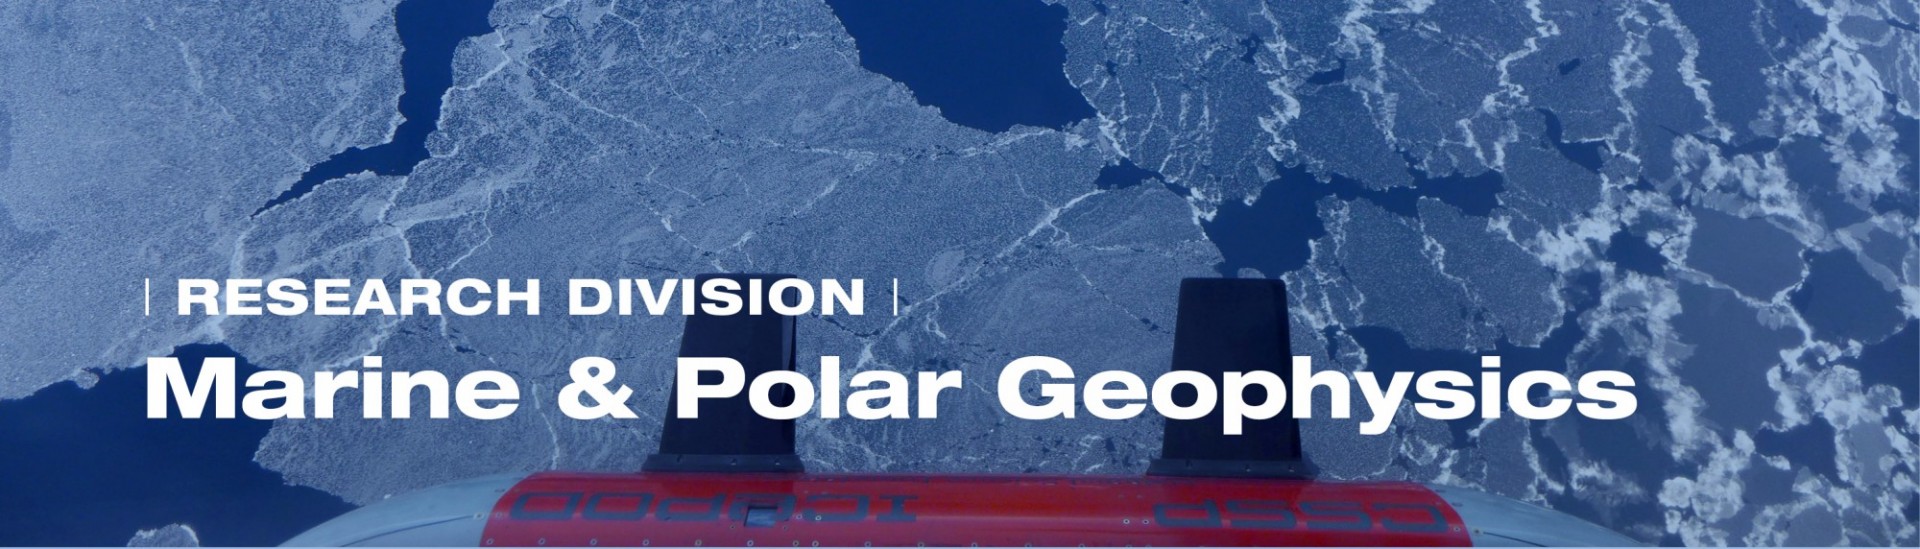 Marine & Polar Geophysics Division